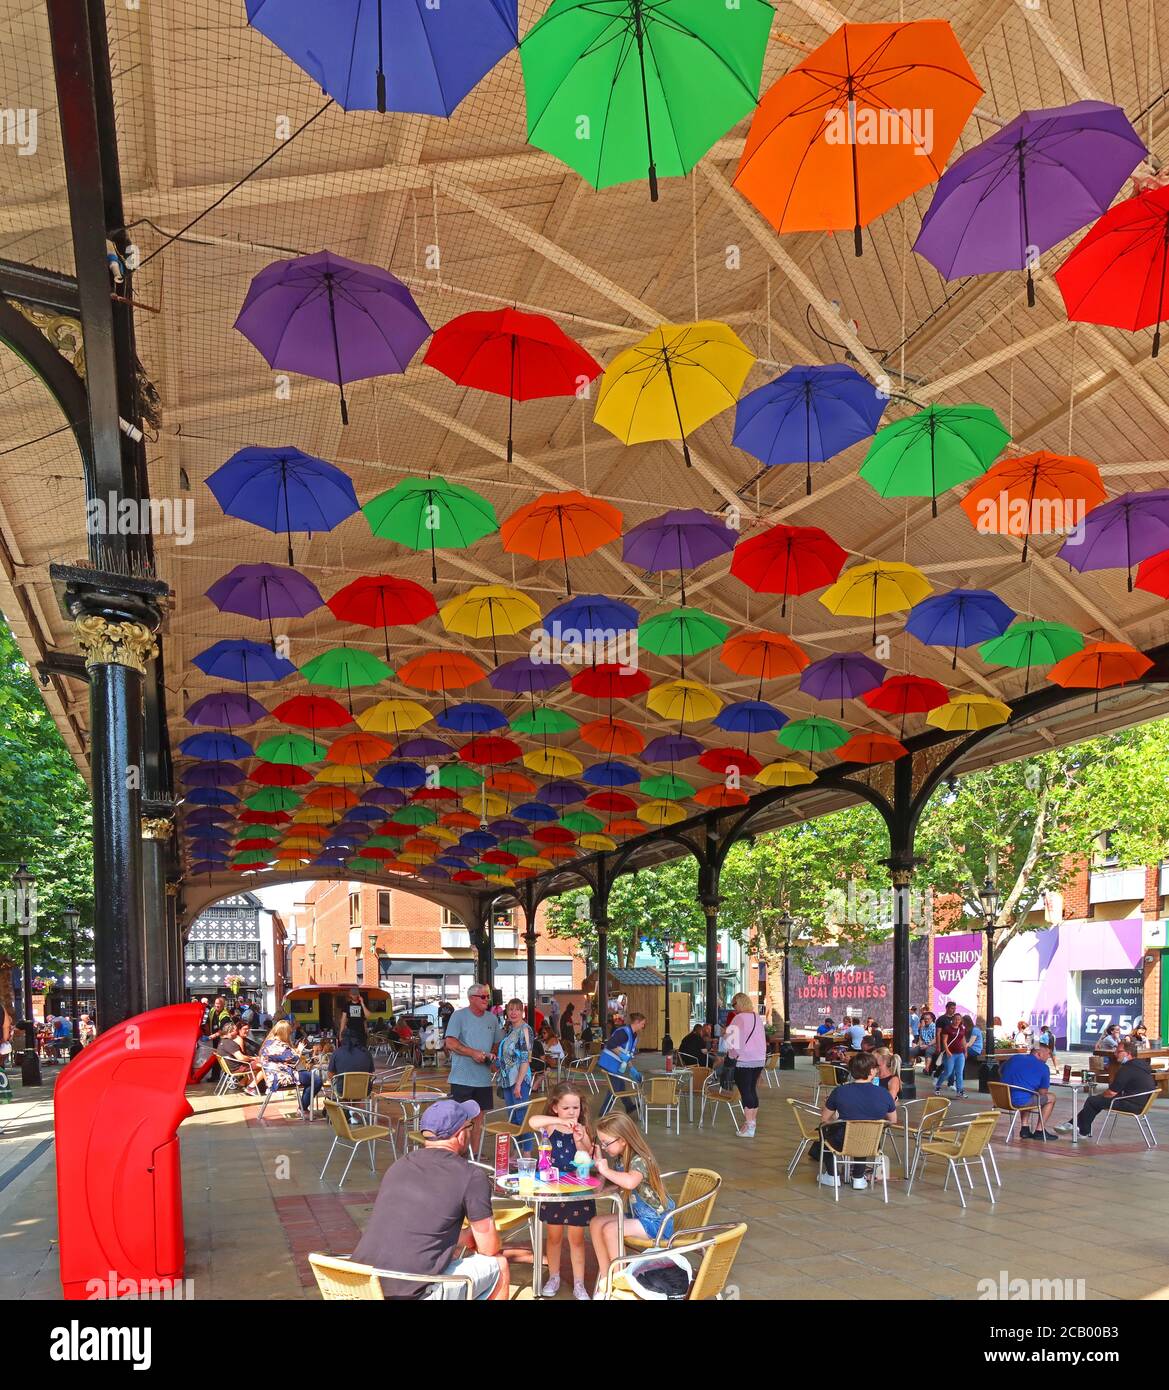 Old Market place, avec parapluies, Warrington, Cheshire, Angleterre, Royaume-Uni, WA1 1QB Banque D'Images